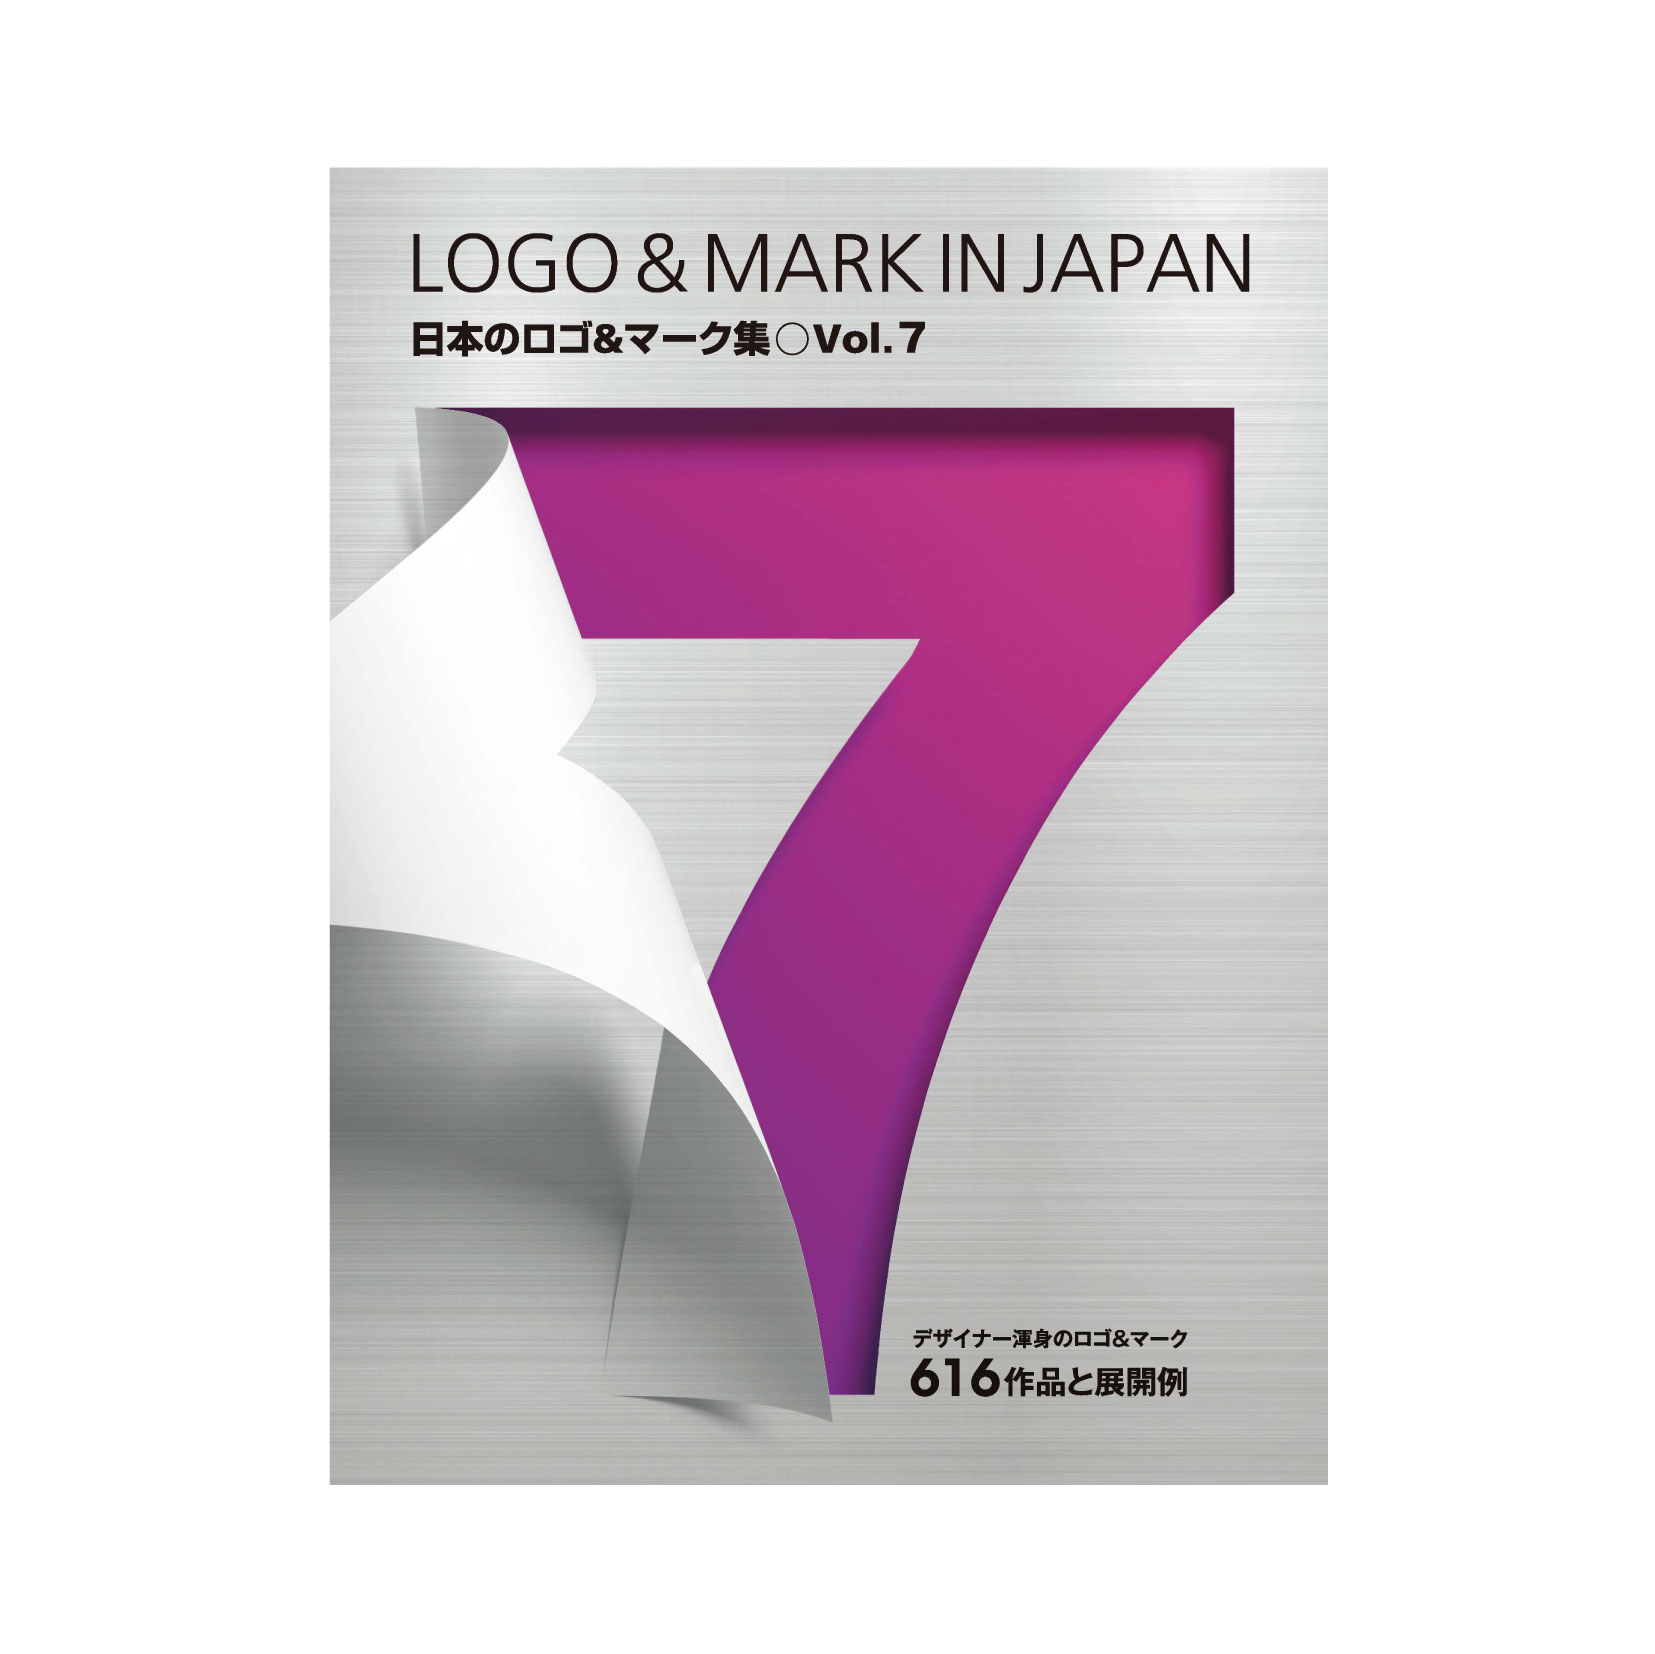 日本のロゴ＆マーク集 Vol.7」に掲載していただきました - ロゴ 